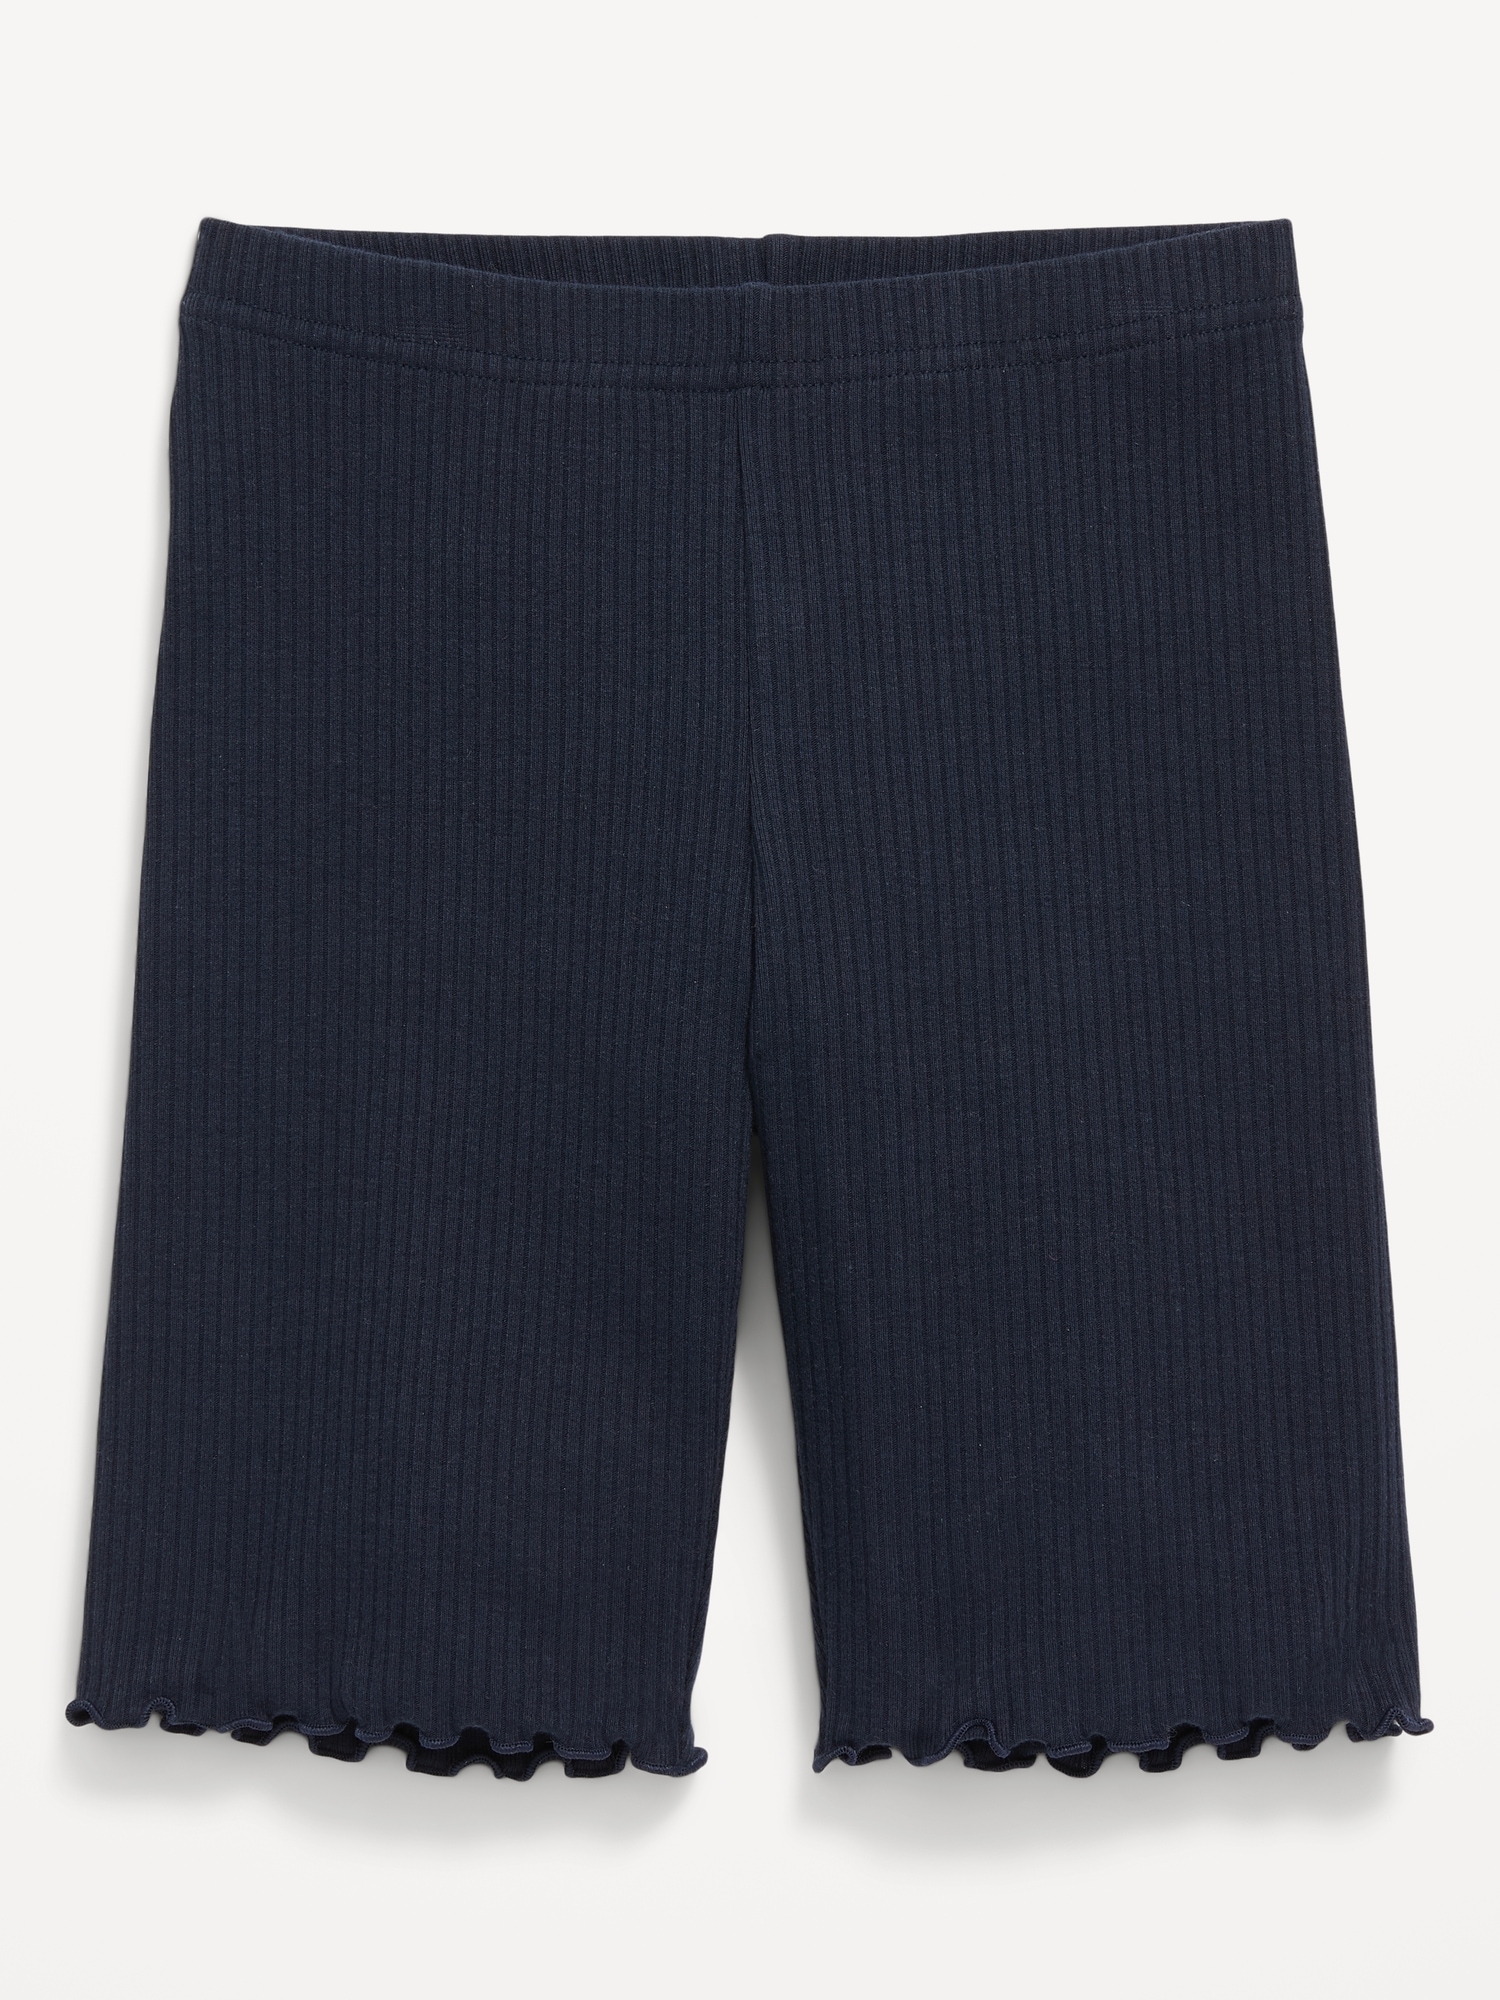 Old Navy Rib-Knit Lettuce-Edged Long Biker Shorts for Girls blue. 1